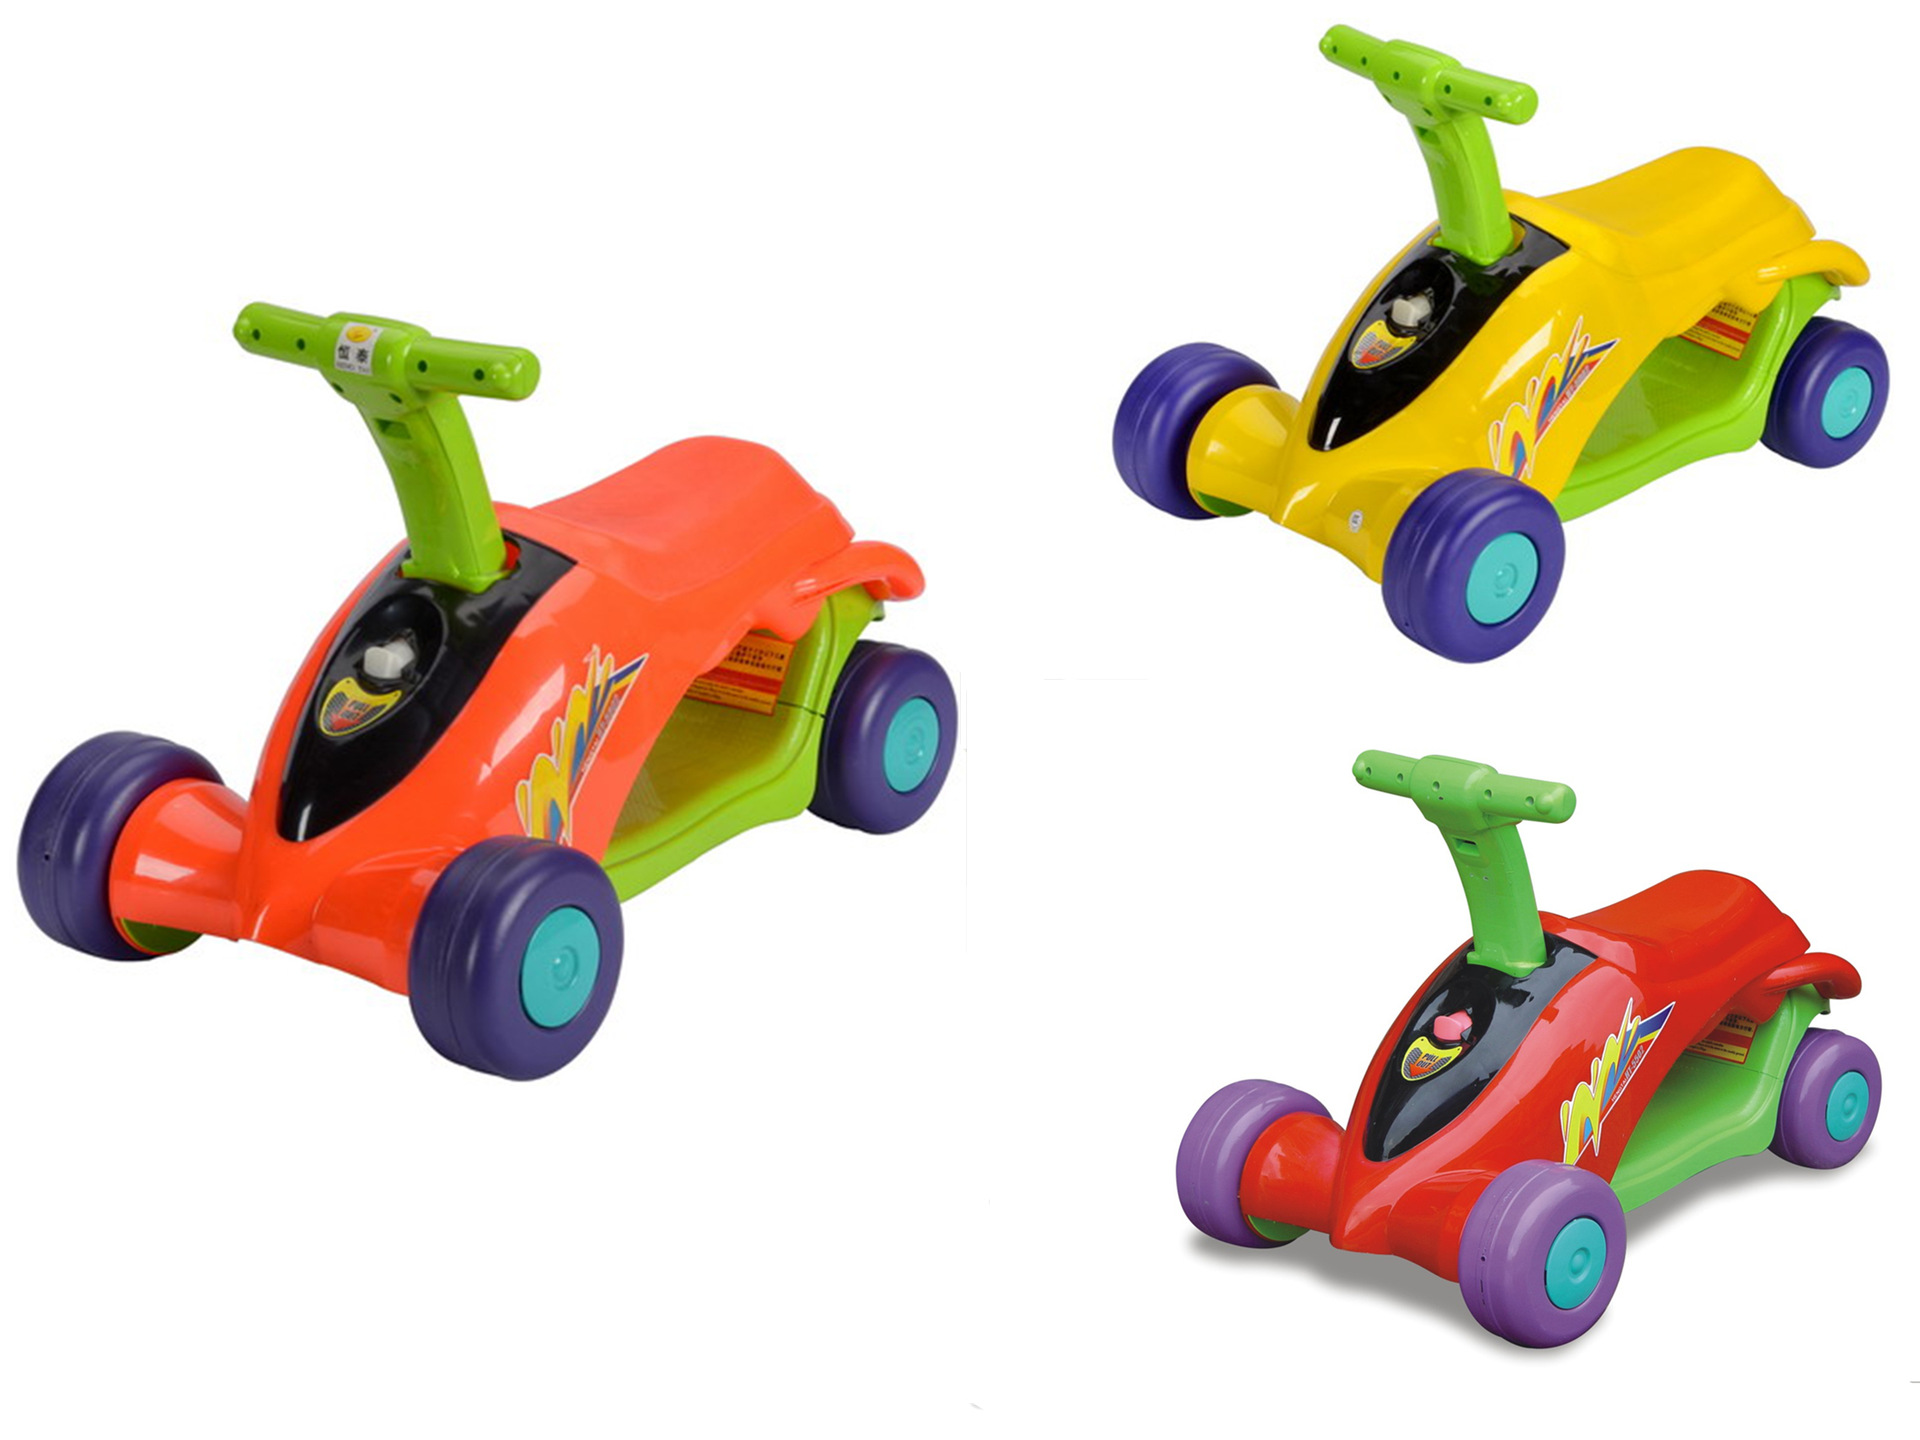 婴儿滑板车 宝宝玩具 婴儿玩具批发 三轮脚踏车 宝宝趣味玩具图片